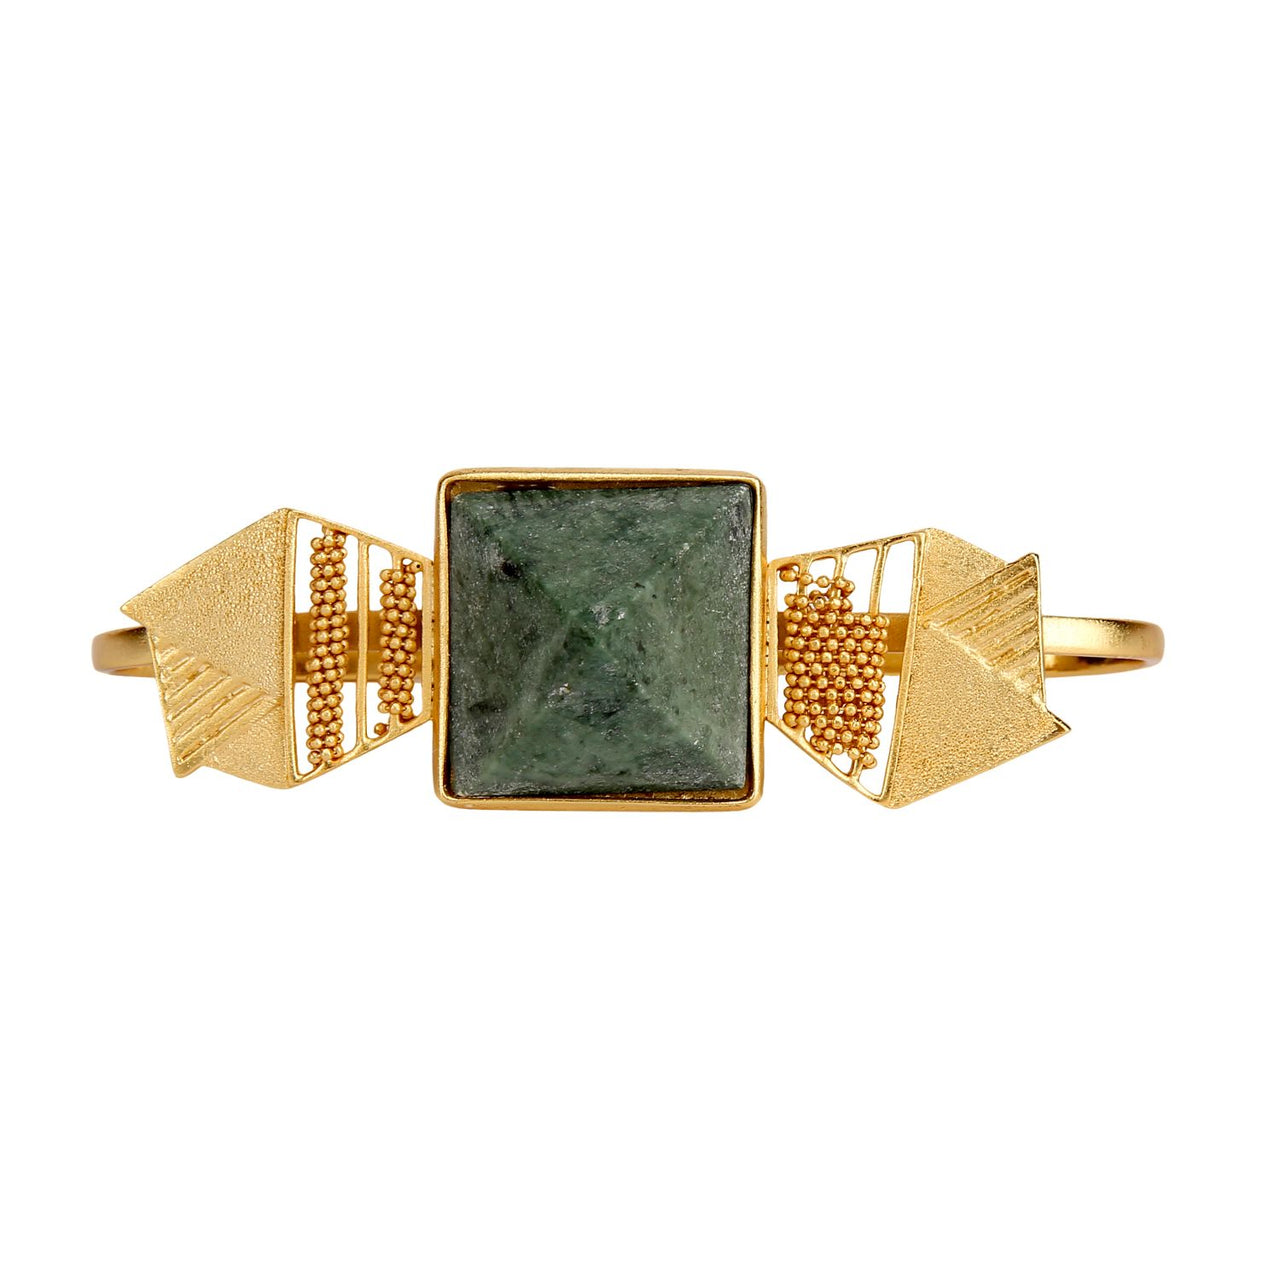 Designer palm bracelet gold plated